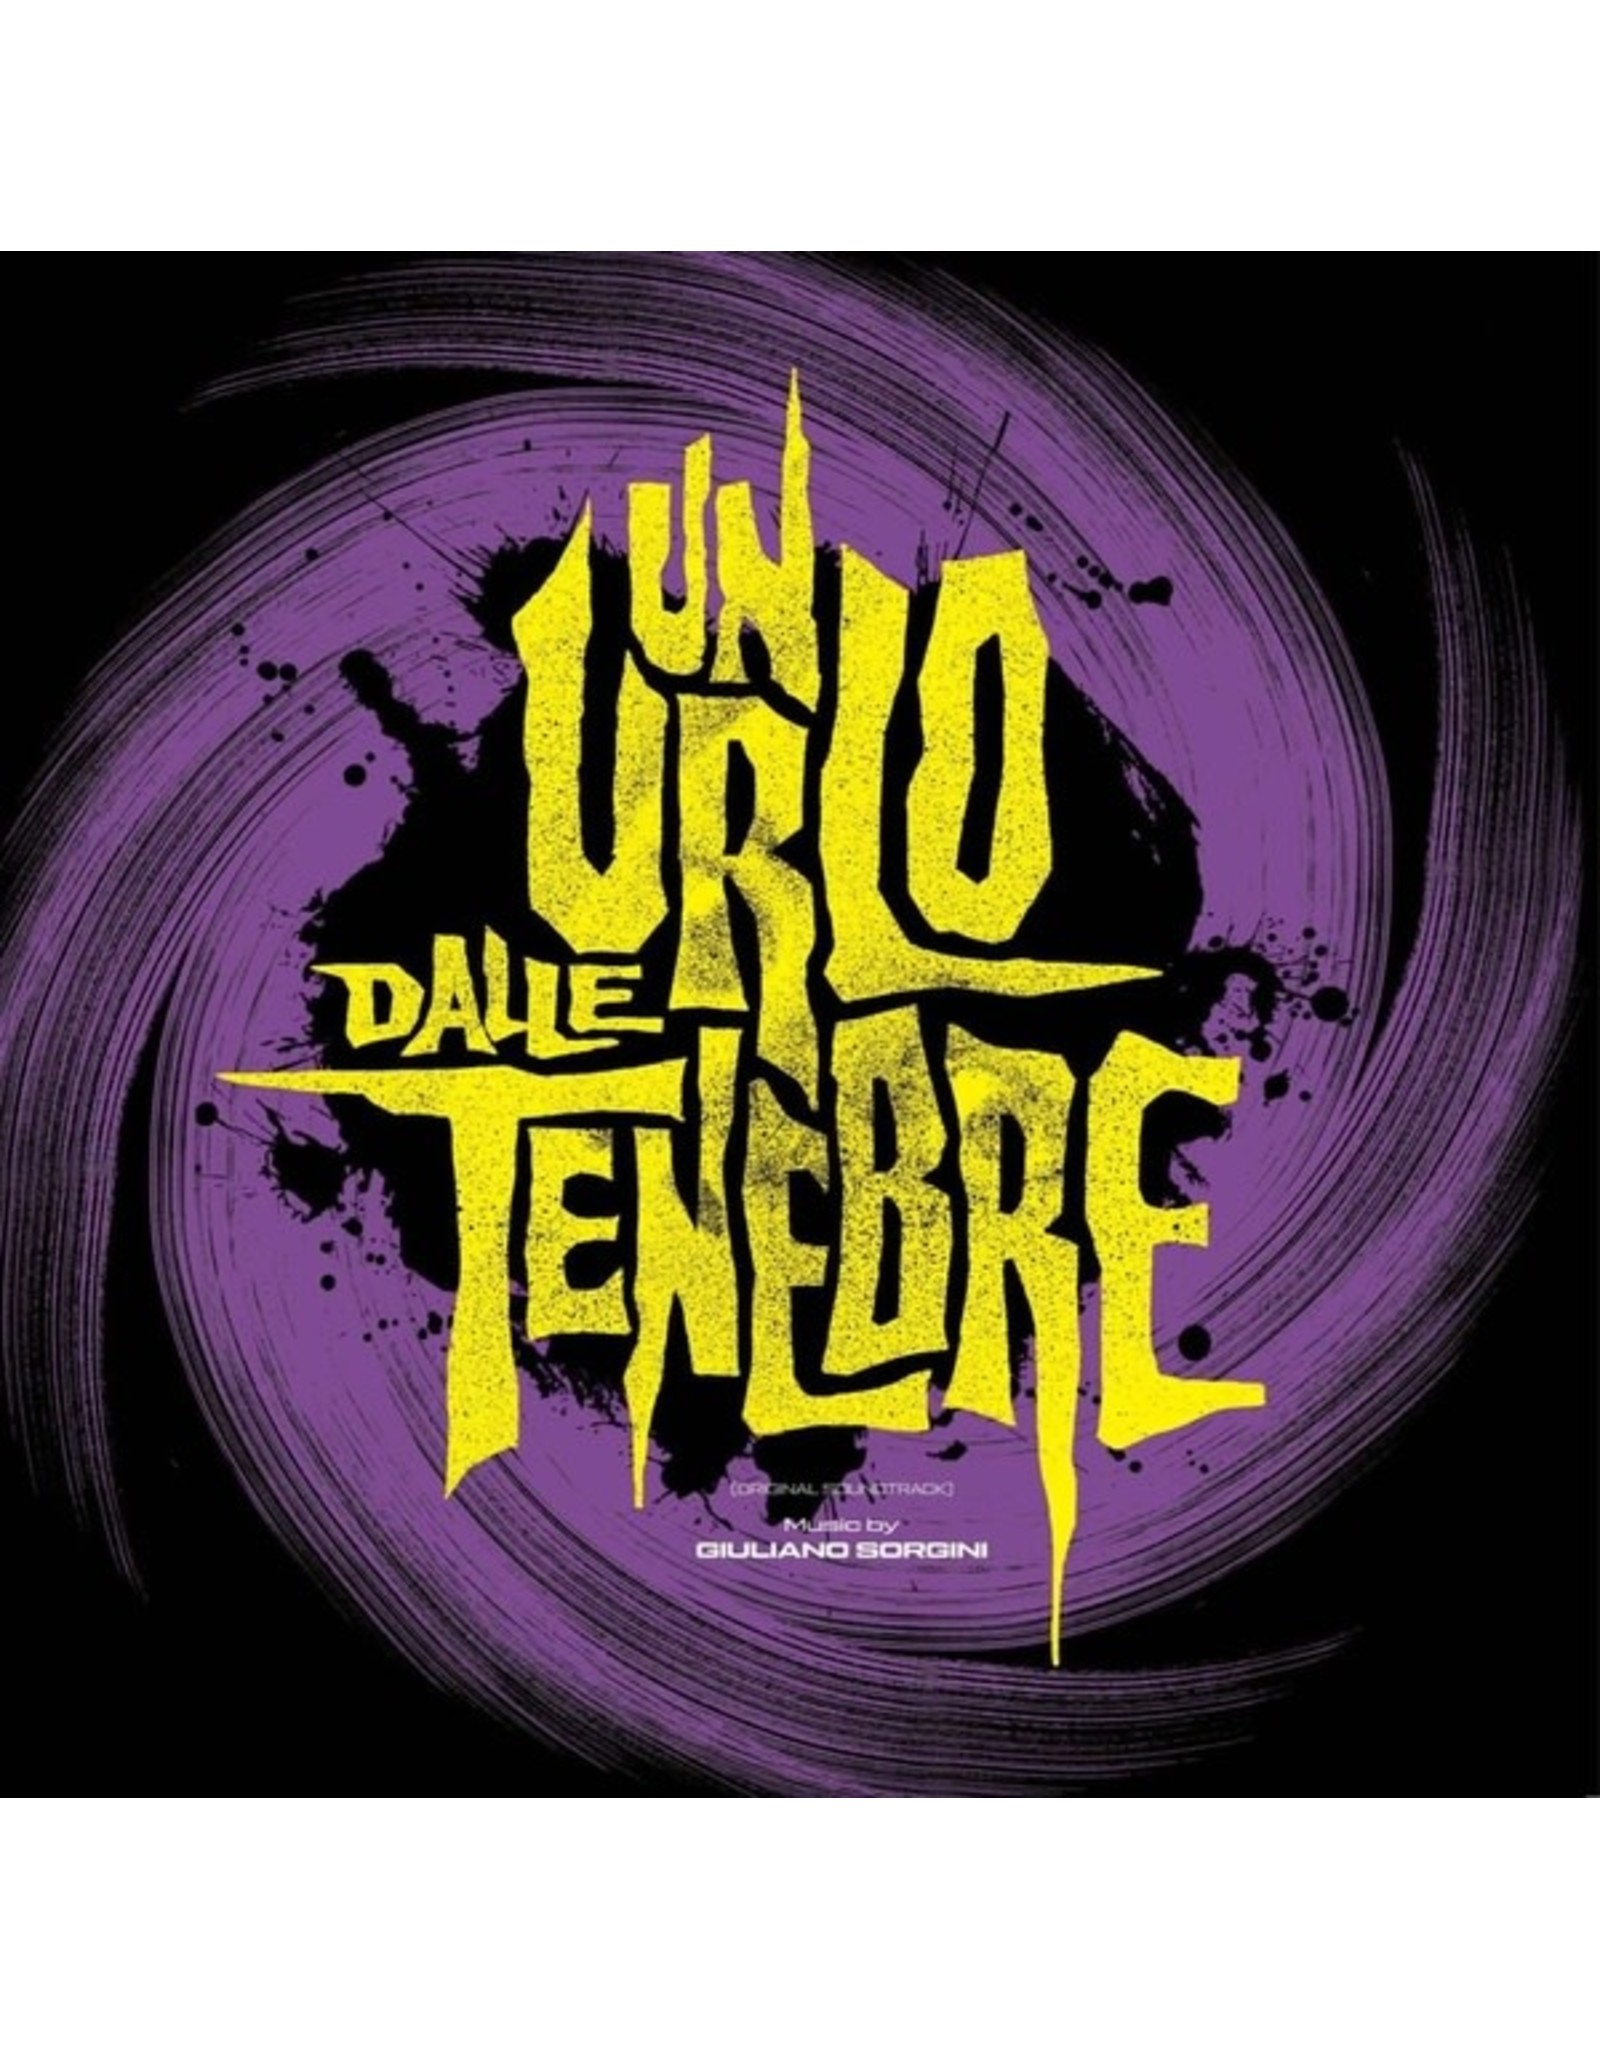 Sonor Music Editions Sorgini, Giuliano: Un Urlo Dalle Tenebre LP